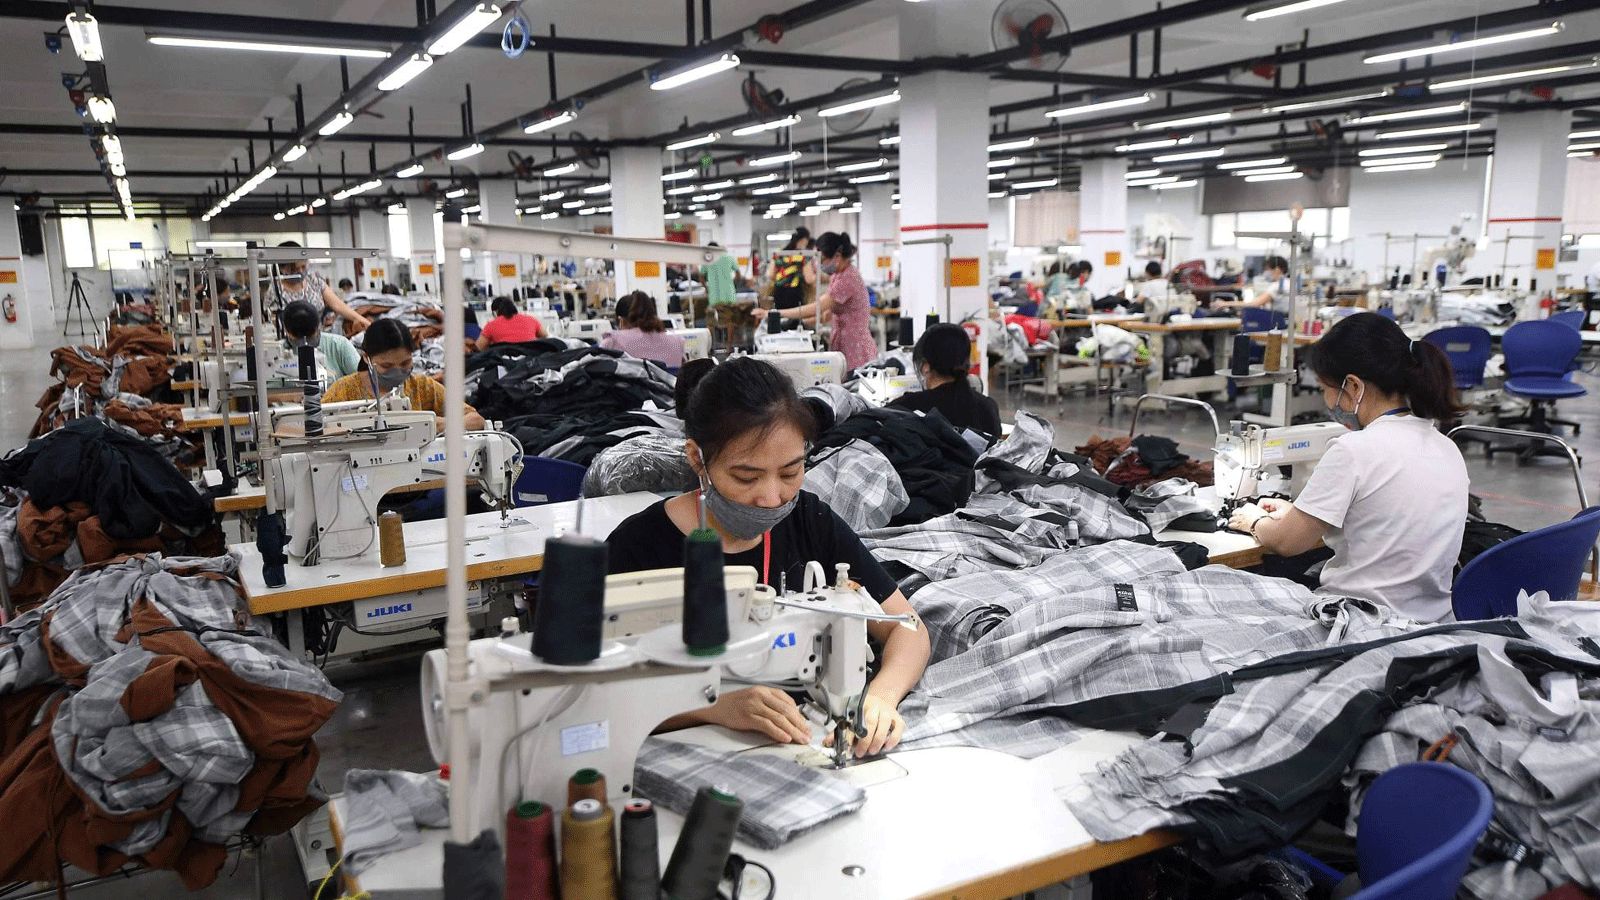 مصنع تابع لشركة Maxport Vietnam ، يصنع ملابس رياضية لمختلف ماركات الملابس النسيجية، في هانوي